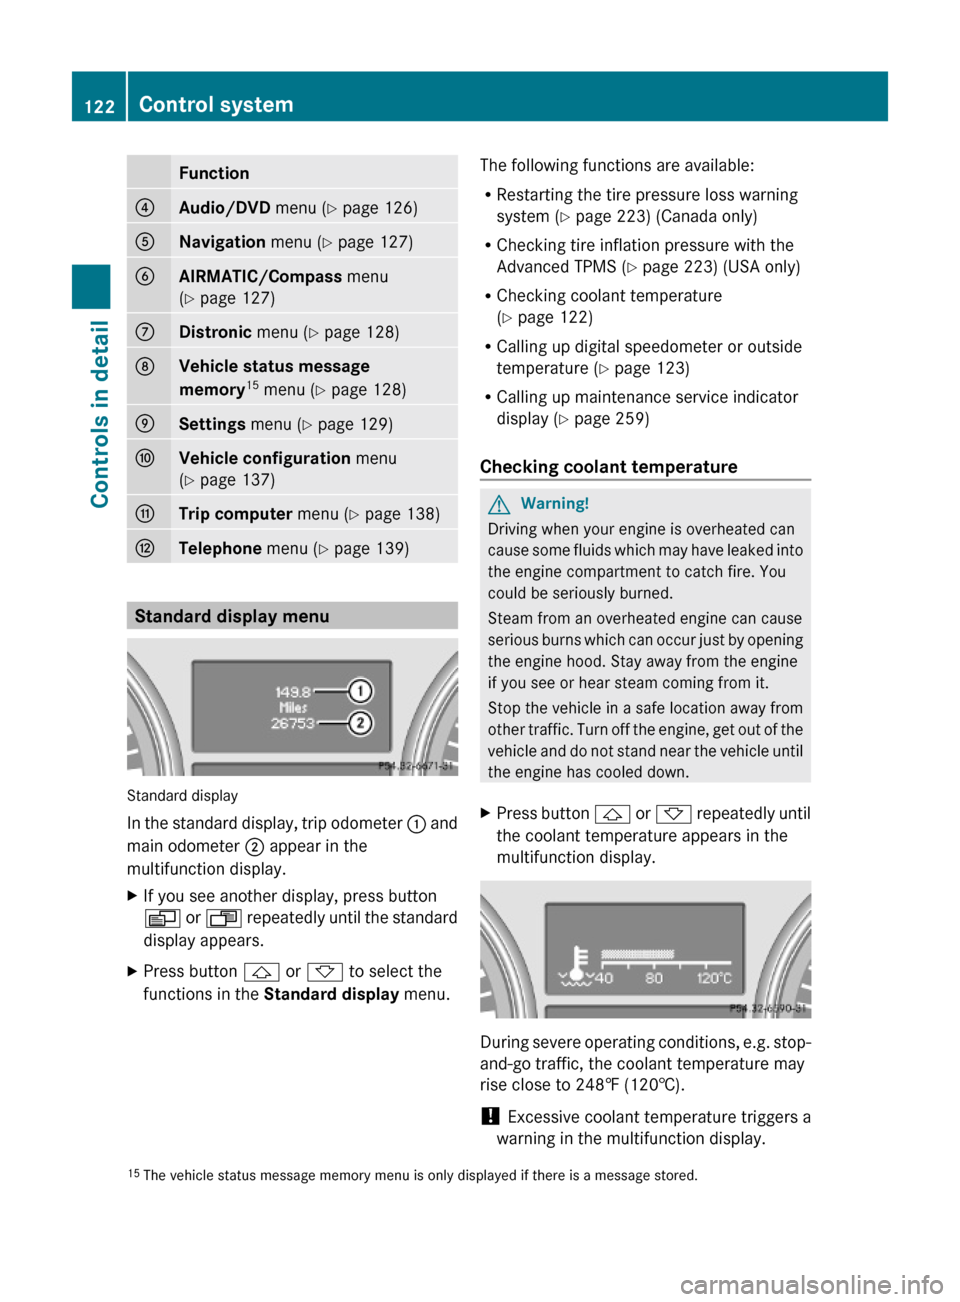 MERCEDES-BENZ ML350 2010 W164 Owners Manual Function?Audio/DVD menu (Y page 126)ANavigation menu (Y page 127)BAIRMATIC/Compass menu
(Y page 127)
CDistronic menu (Y page 128)DVehicle status message 
memory15 menu (Y page 128)
ESettings menu (Y p